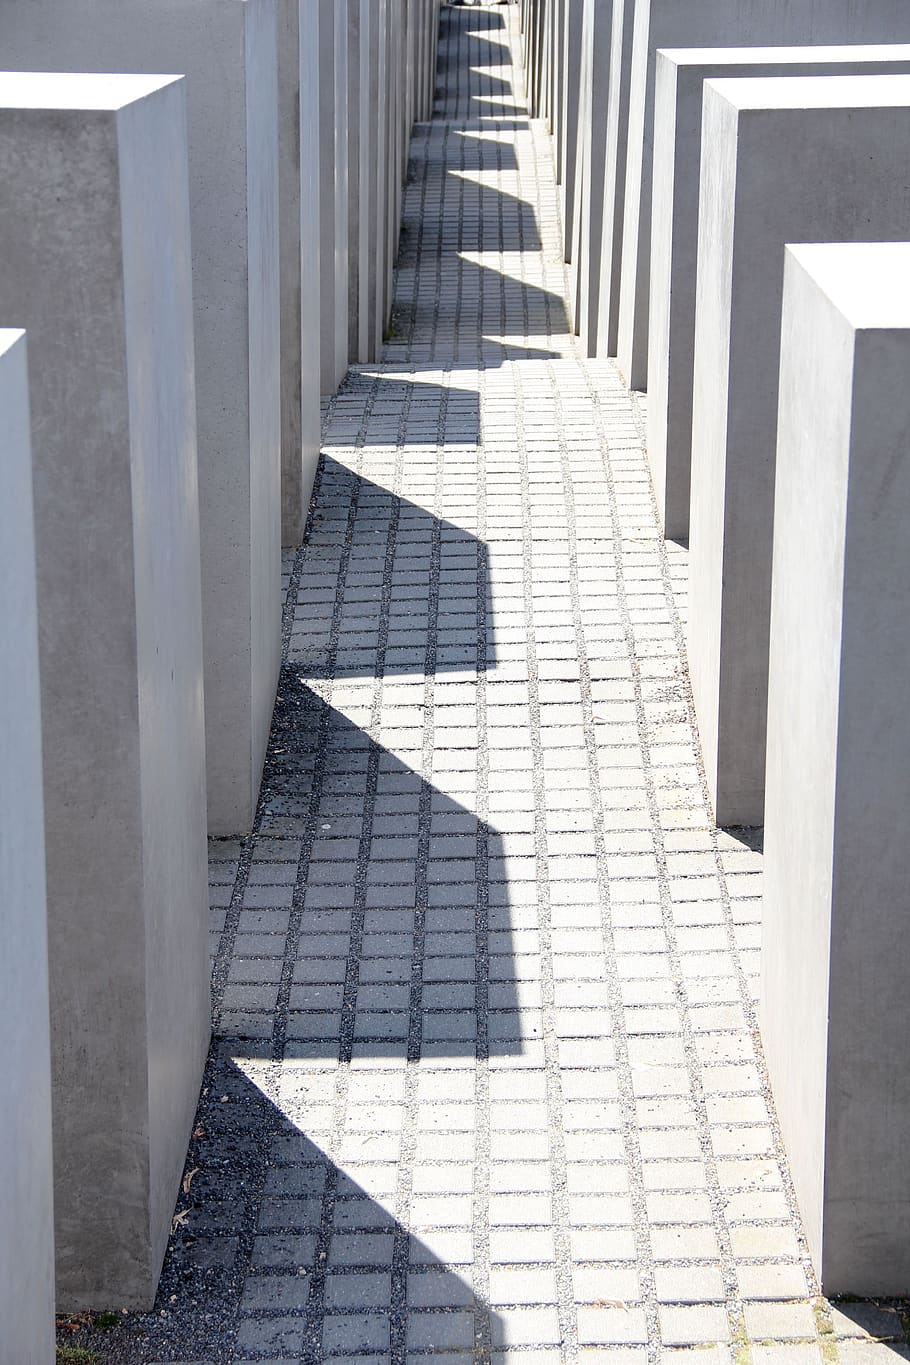 holocausto, berlín, memorial, memoria, luz solar, sombra, arquitectura, dirección, día, camino a seguir